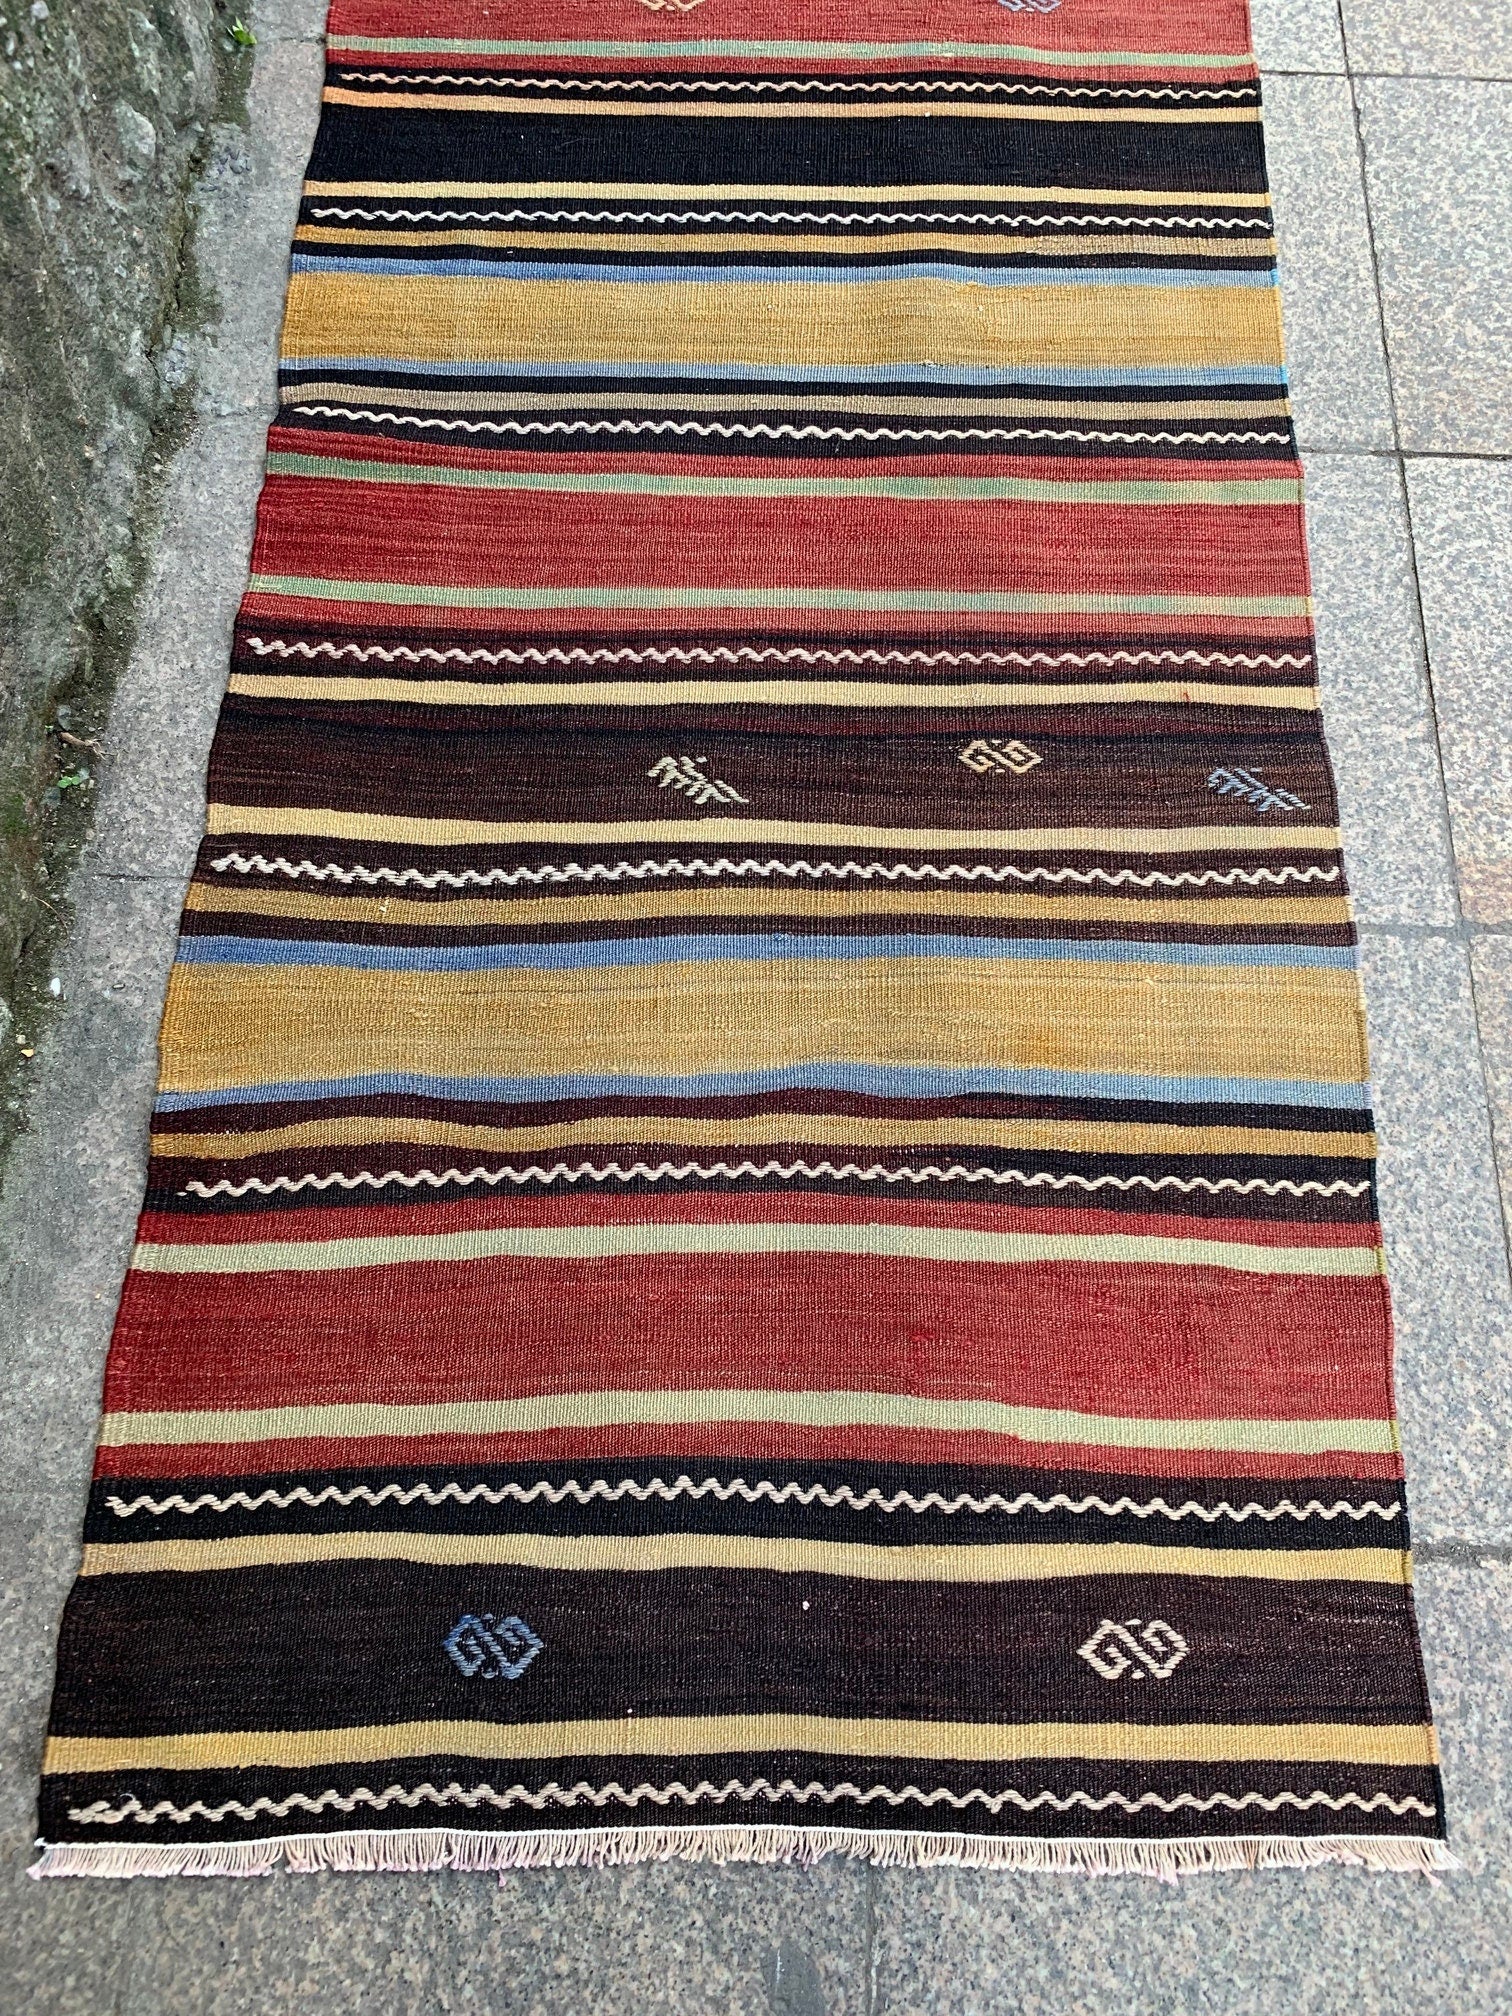 Striped kilim rug, 2.8x5.11 ft, K715